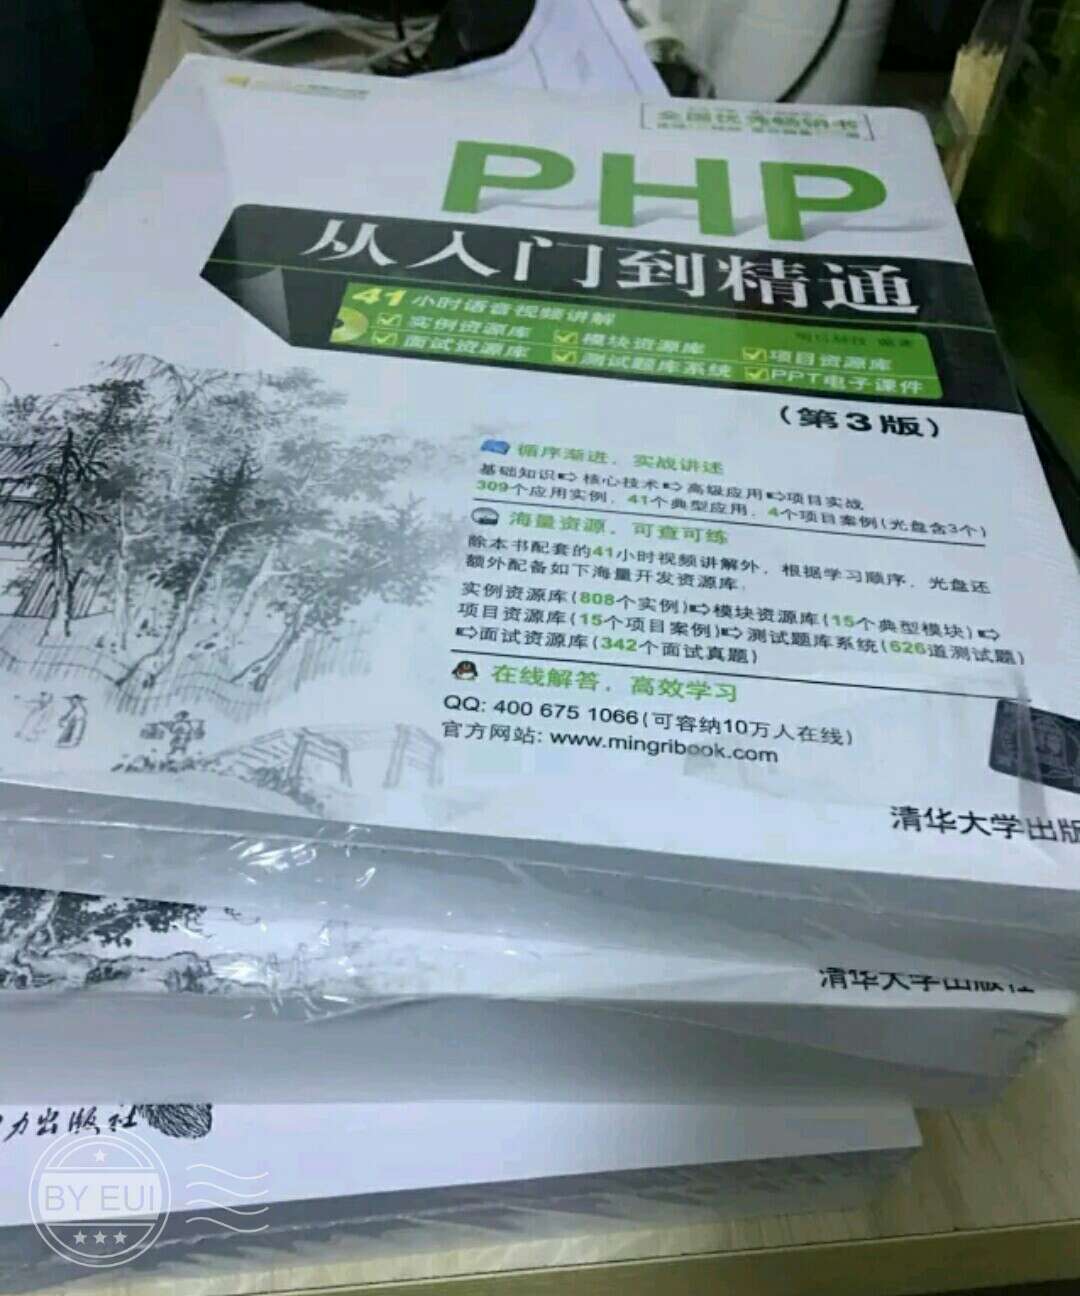 书的质量很好，印刷精美、文字精准，对学习PHP语言很有帮助。